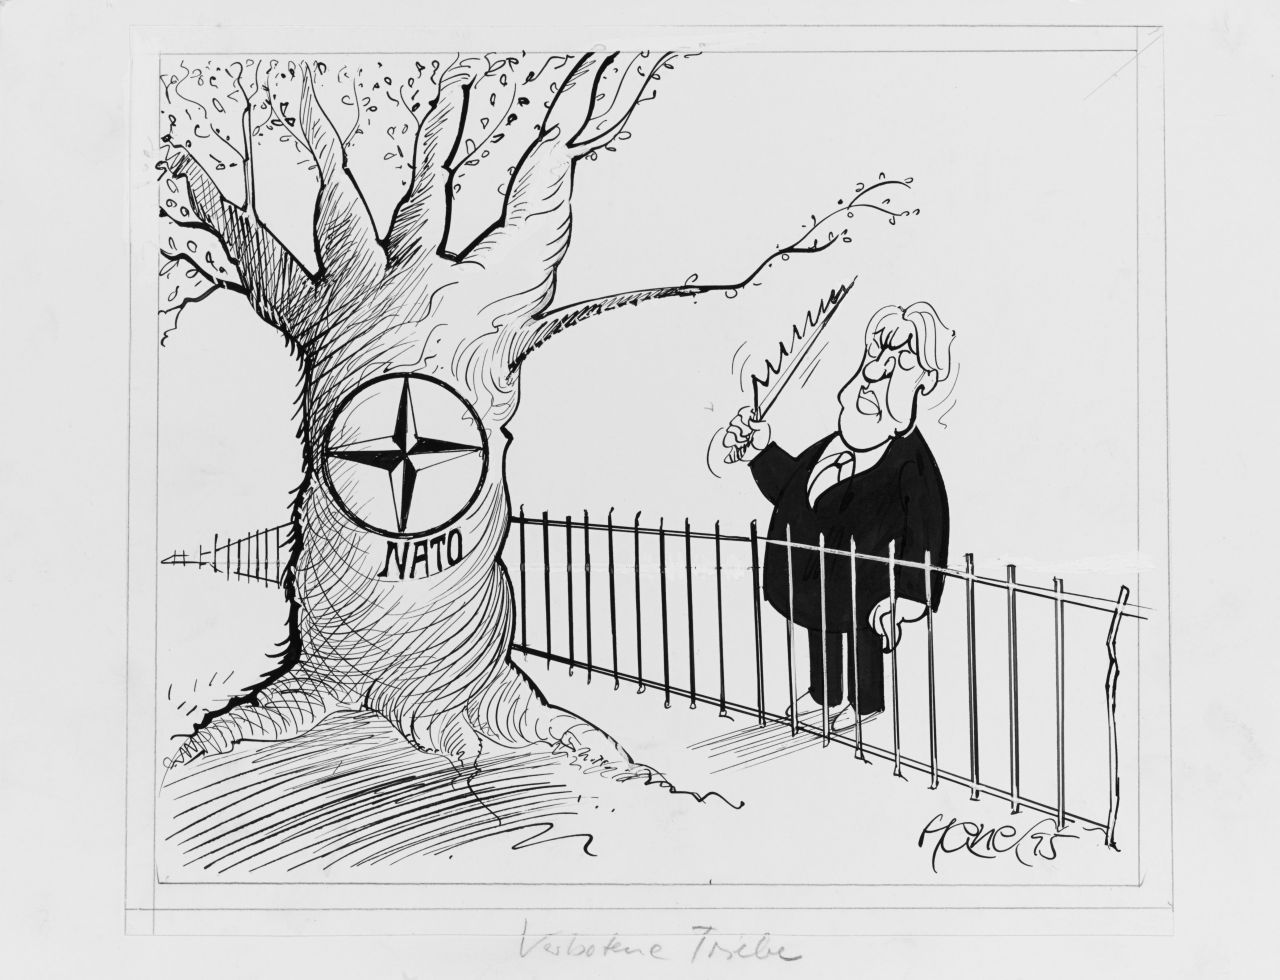 Karikatur von Walter Hanel zur NATO-Osterweiterung.